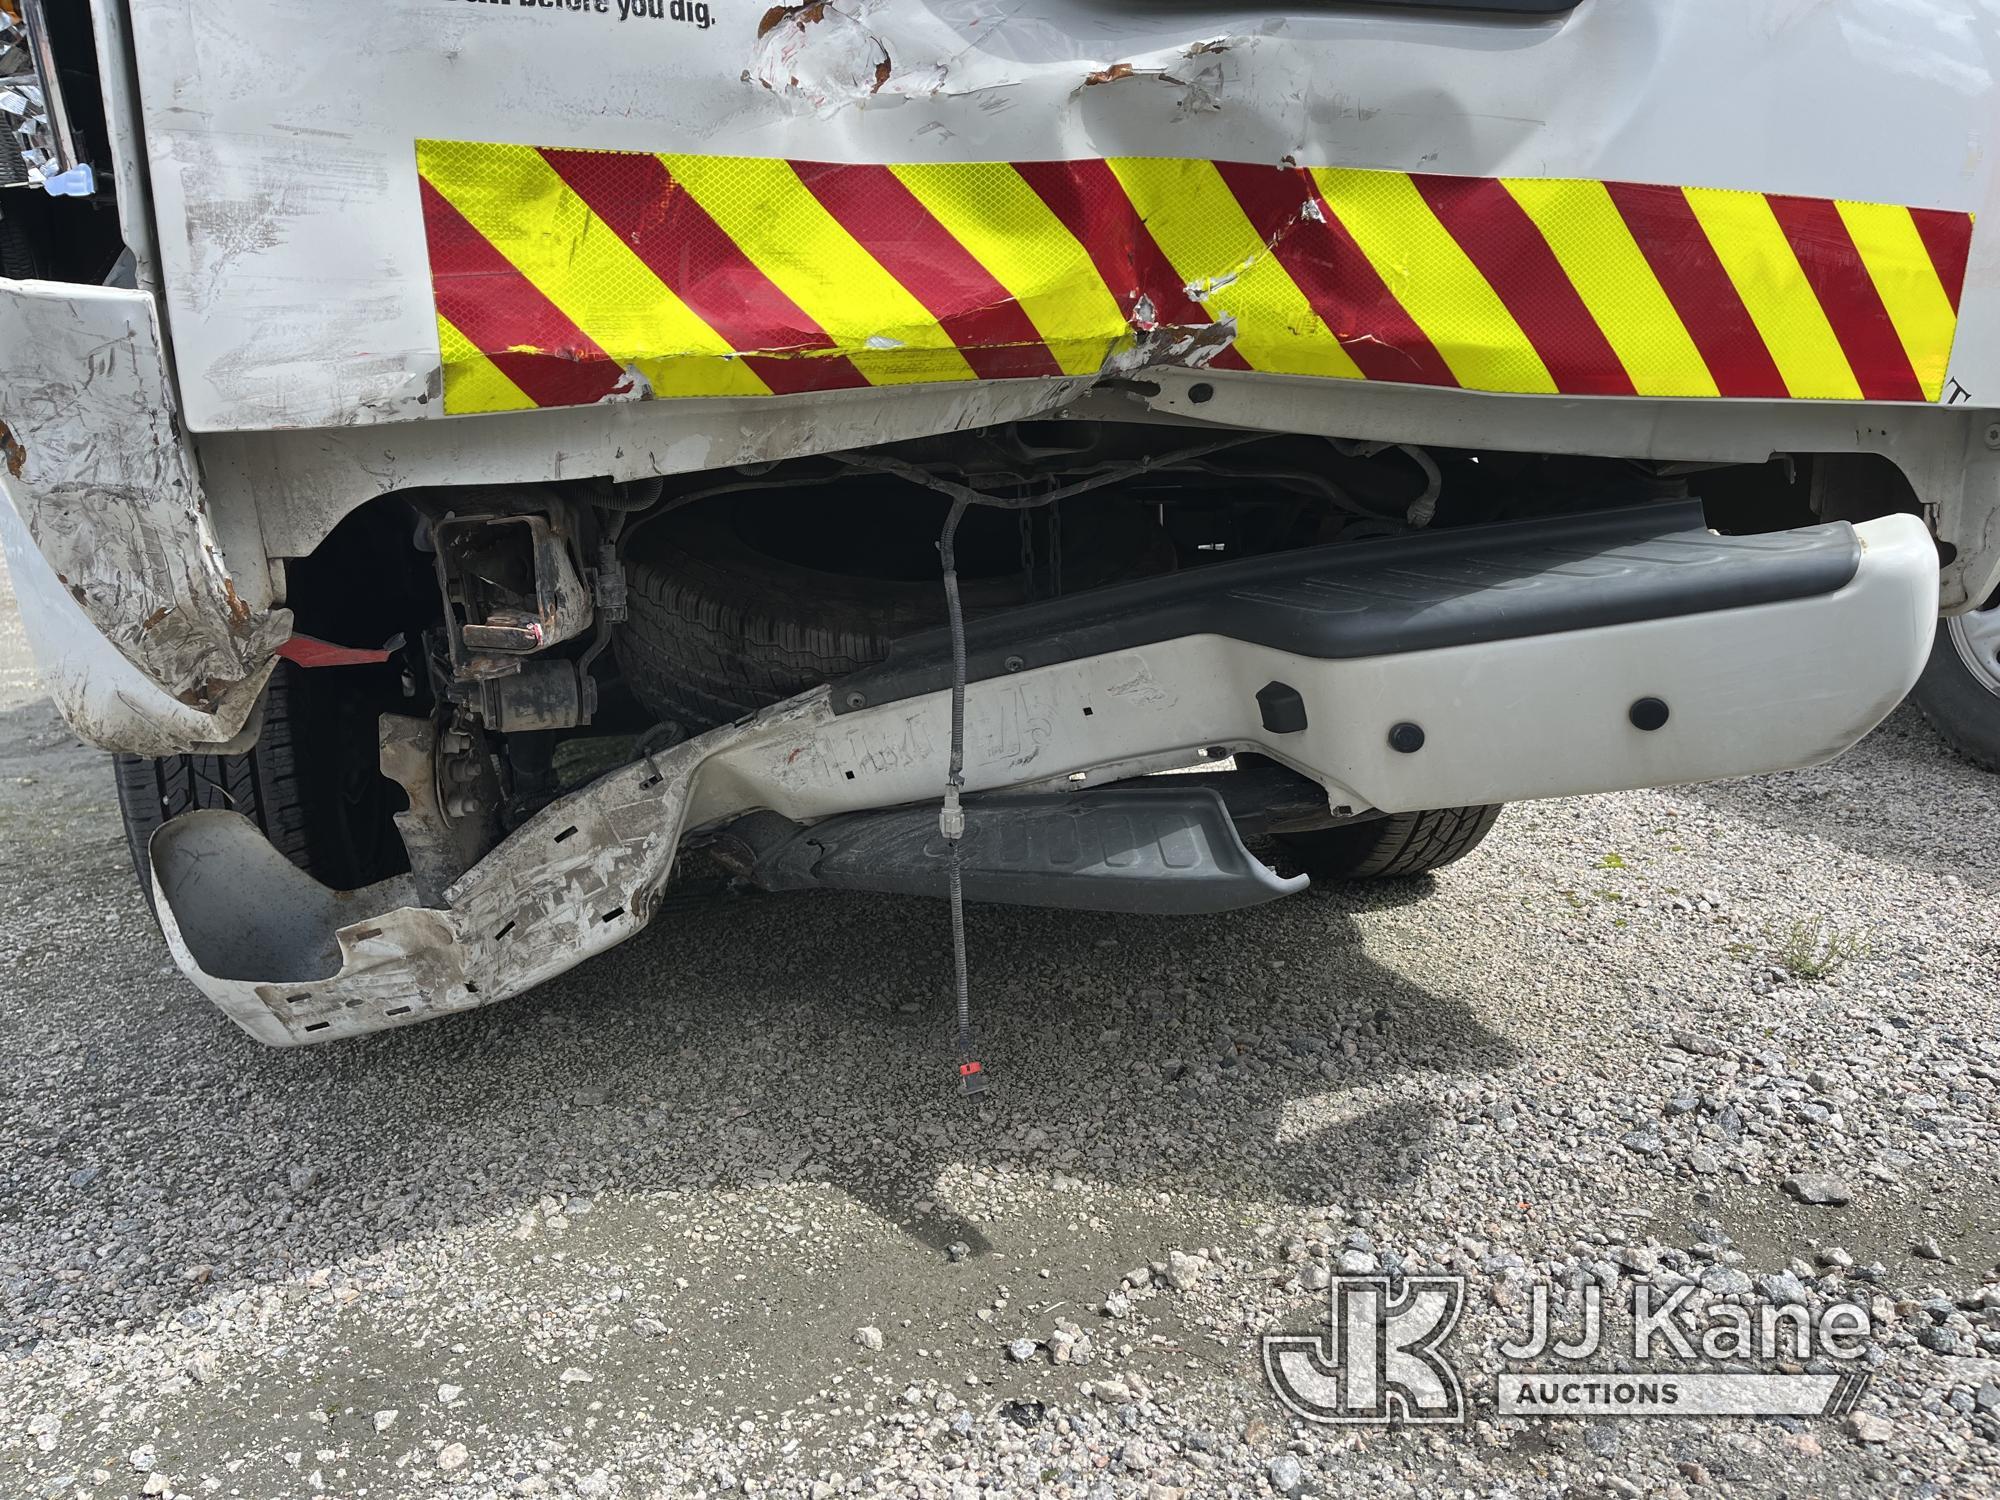 (Chester, VA) 2018 Nissan Frontier Extended-Cab Pickup Truck Runs & Moves) (Major Body Damage, Rear